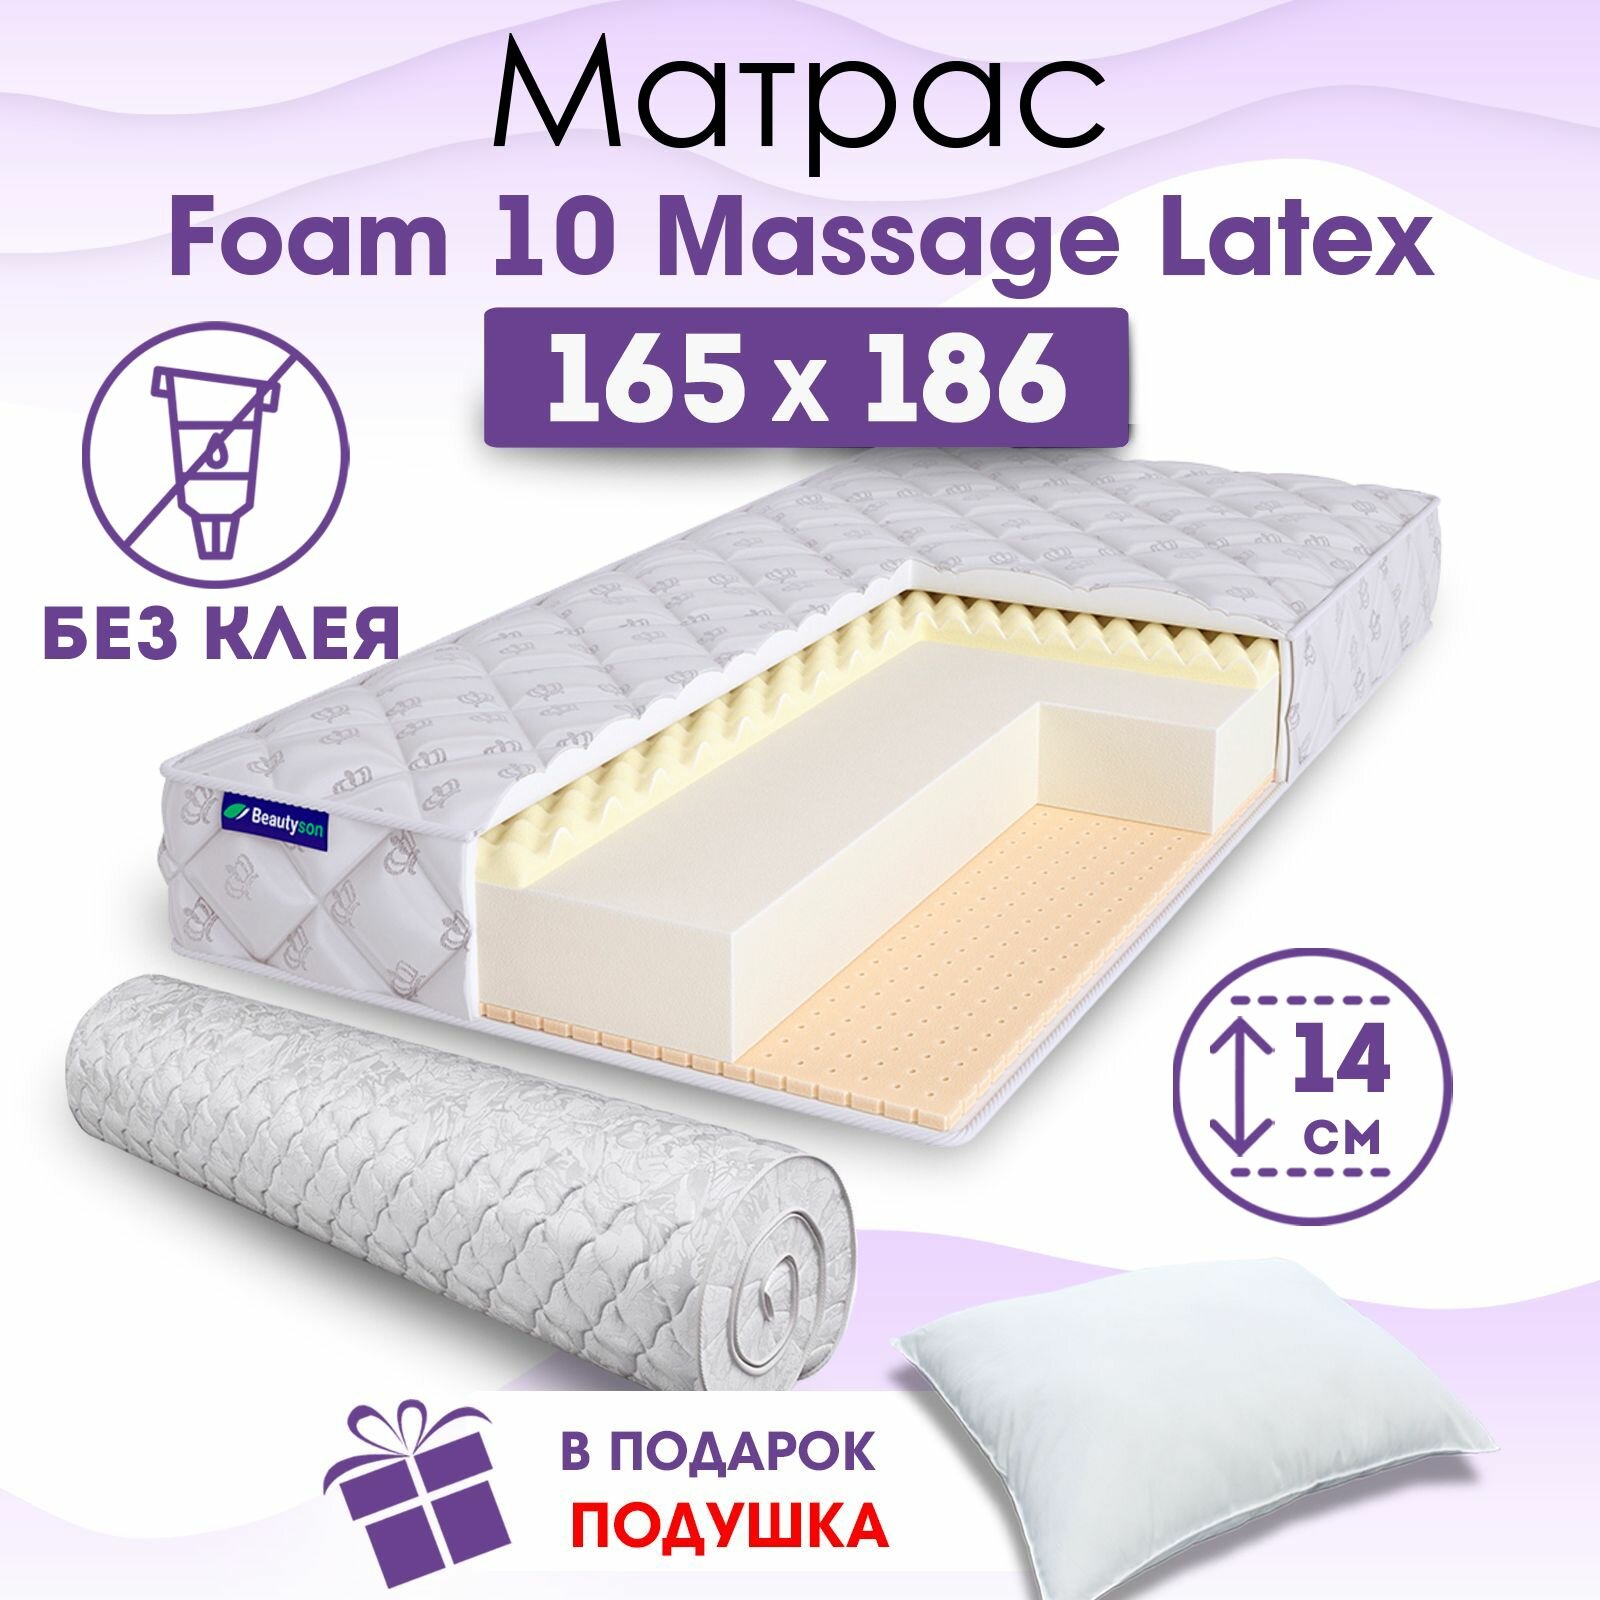 Ортопедический матрас Beautyson Foam 10 Massage Latex без клея, 165х186, 14 см, беспружинный, двухспальный, на кровать, для дивана, мягкий, не высокий